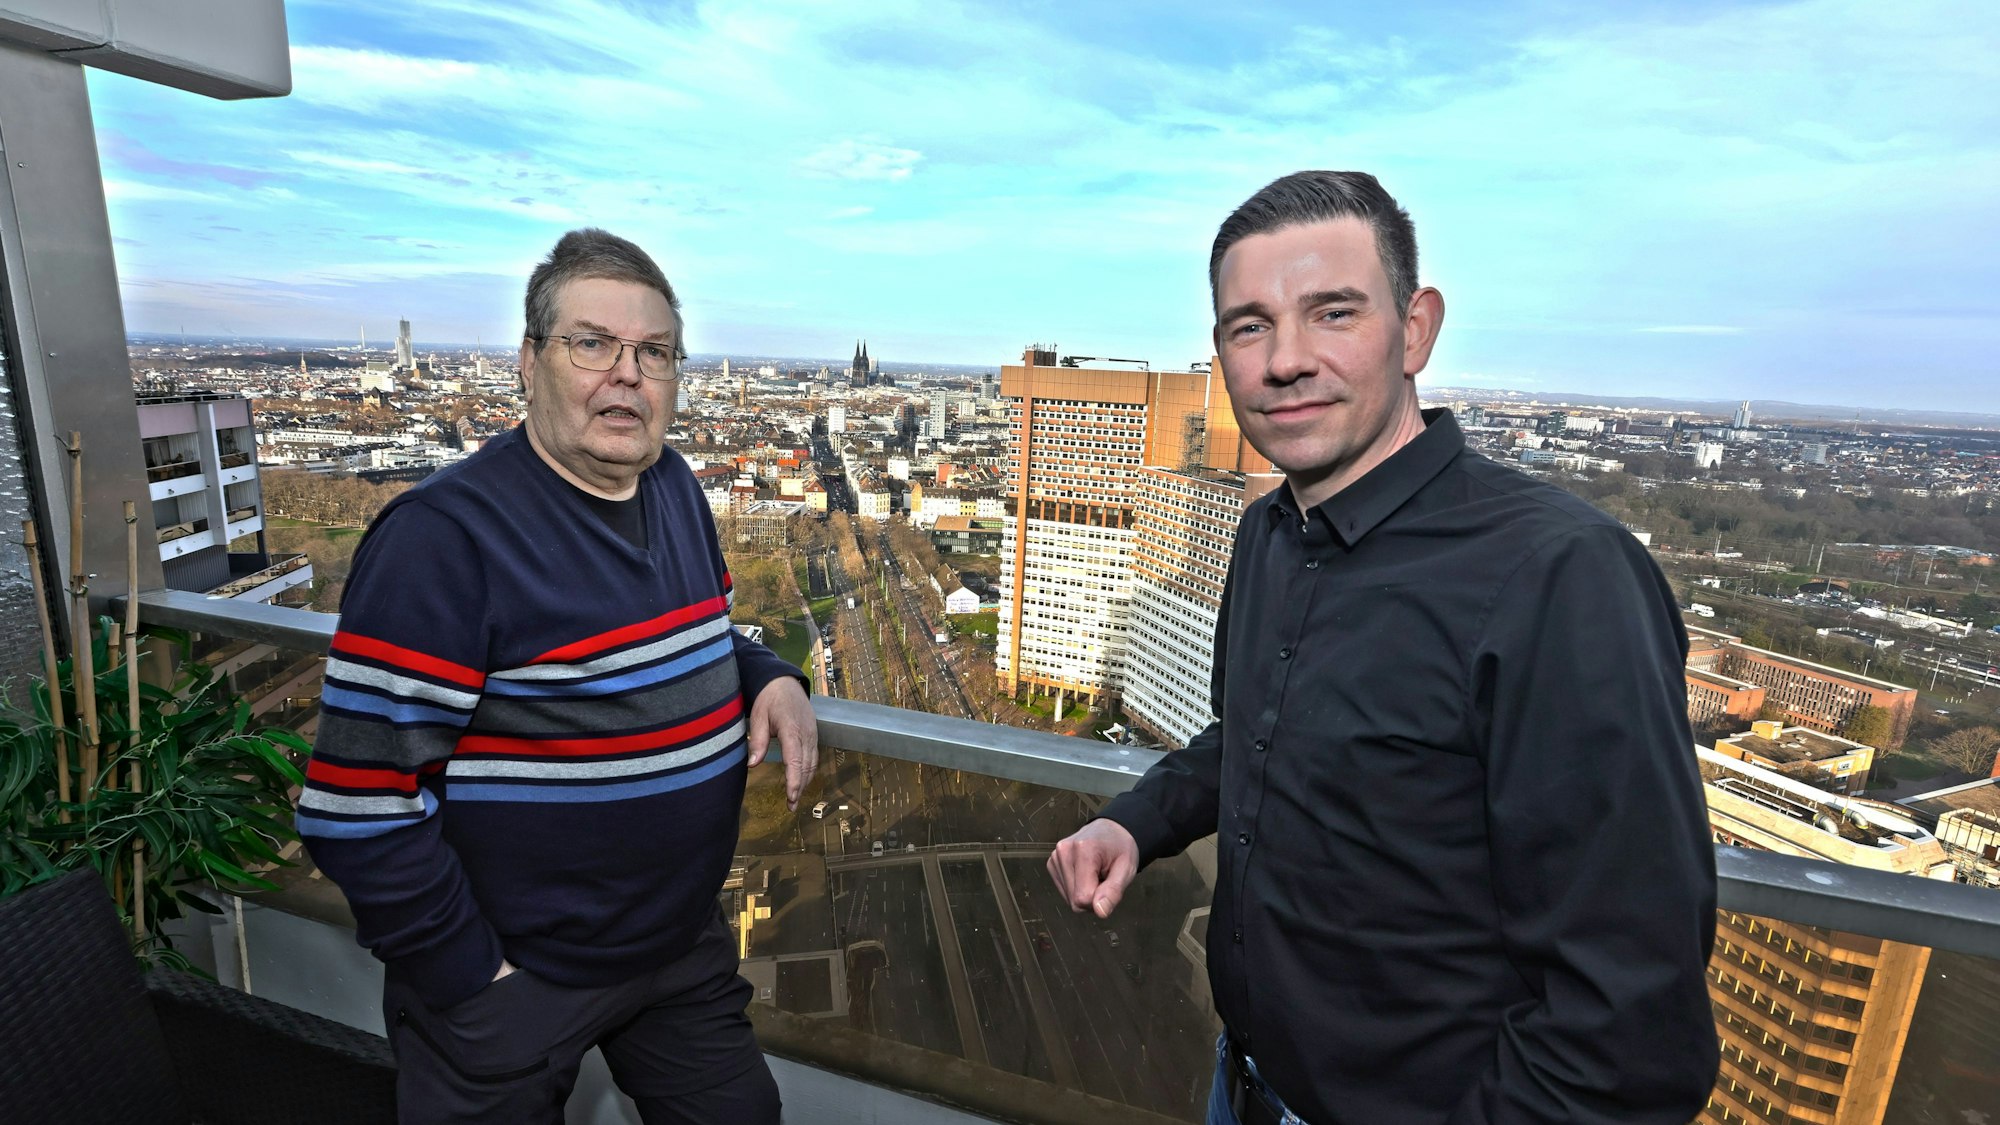 Zwei Männer auf einem Balkon, im Hintergrund sieht man die Skyline von Köln.